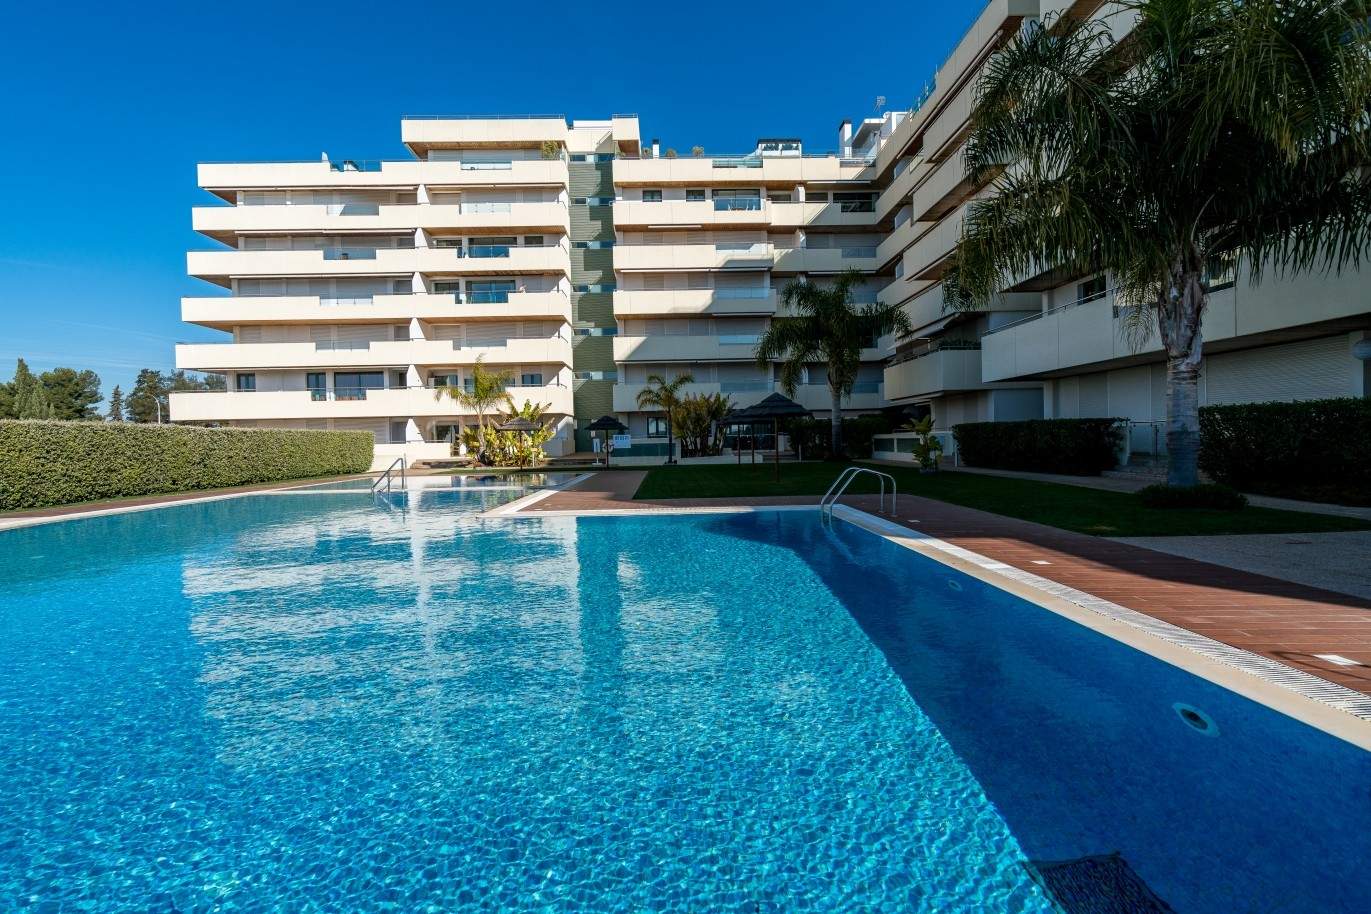 Venta de apartamento, cerca de la playa, Vilamoura, Algarve, Portugal_74095